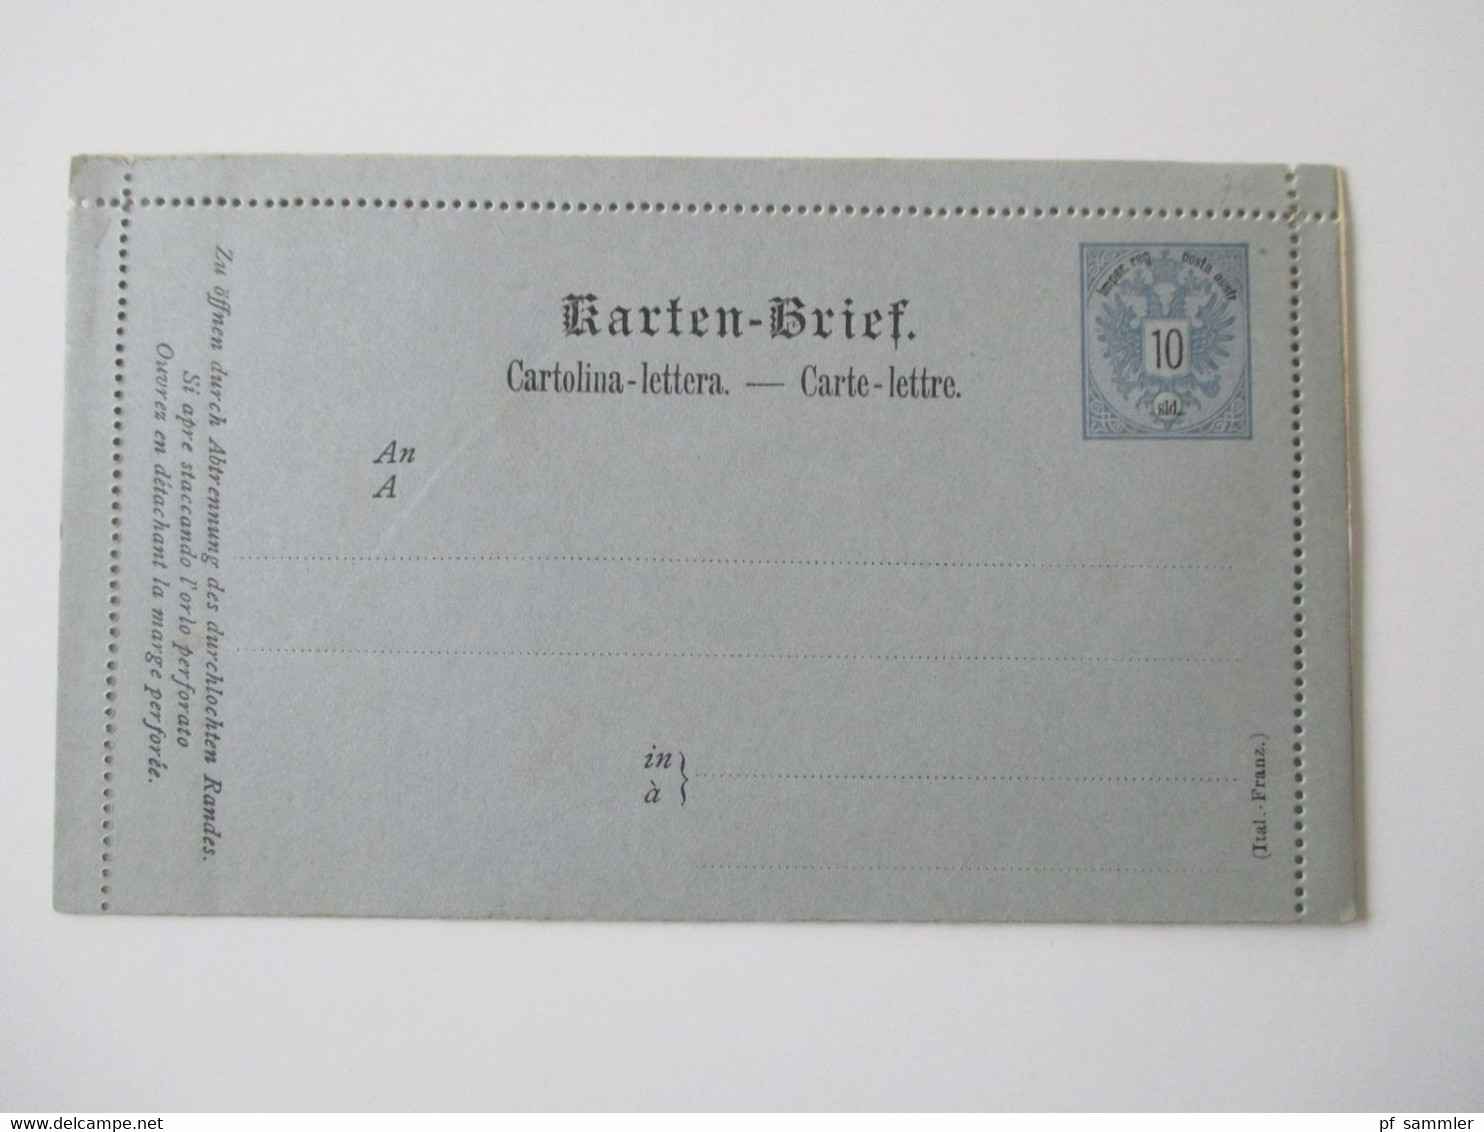 Österreich Levante ab 1883 Ganzsachen / Kartenbriefe / 2x Doppelkarte alles ungebraucht! Insgesamt 11 Stück